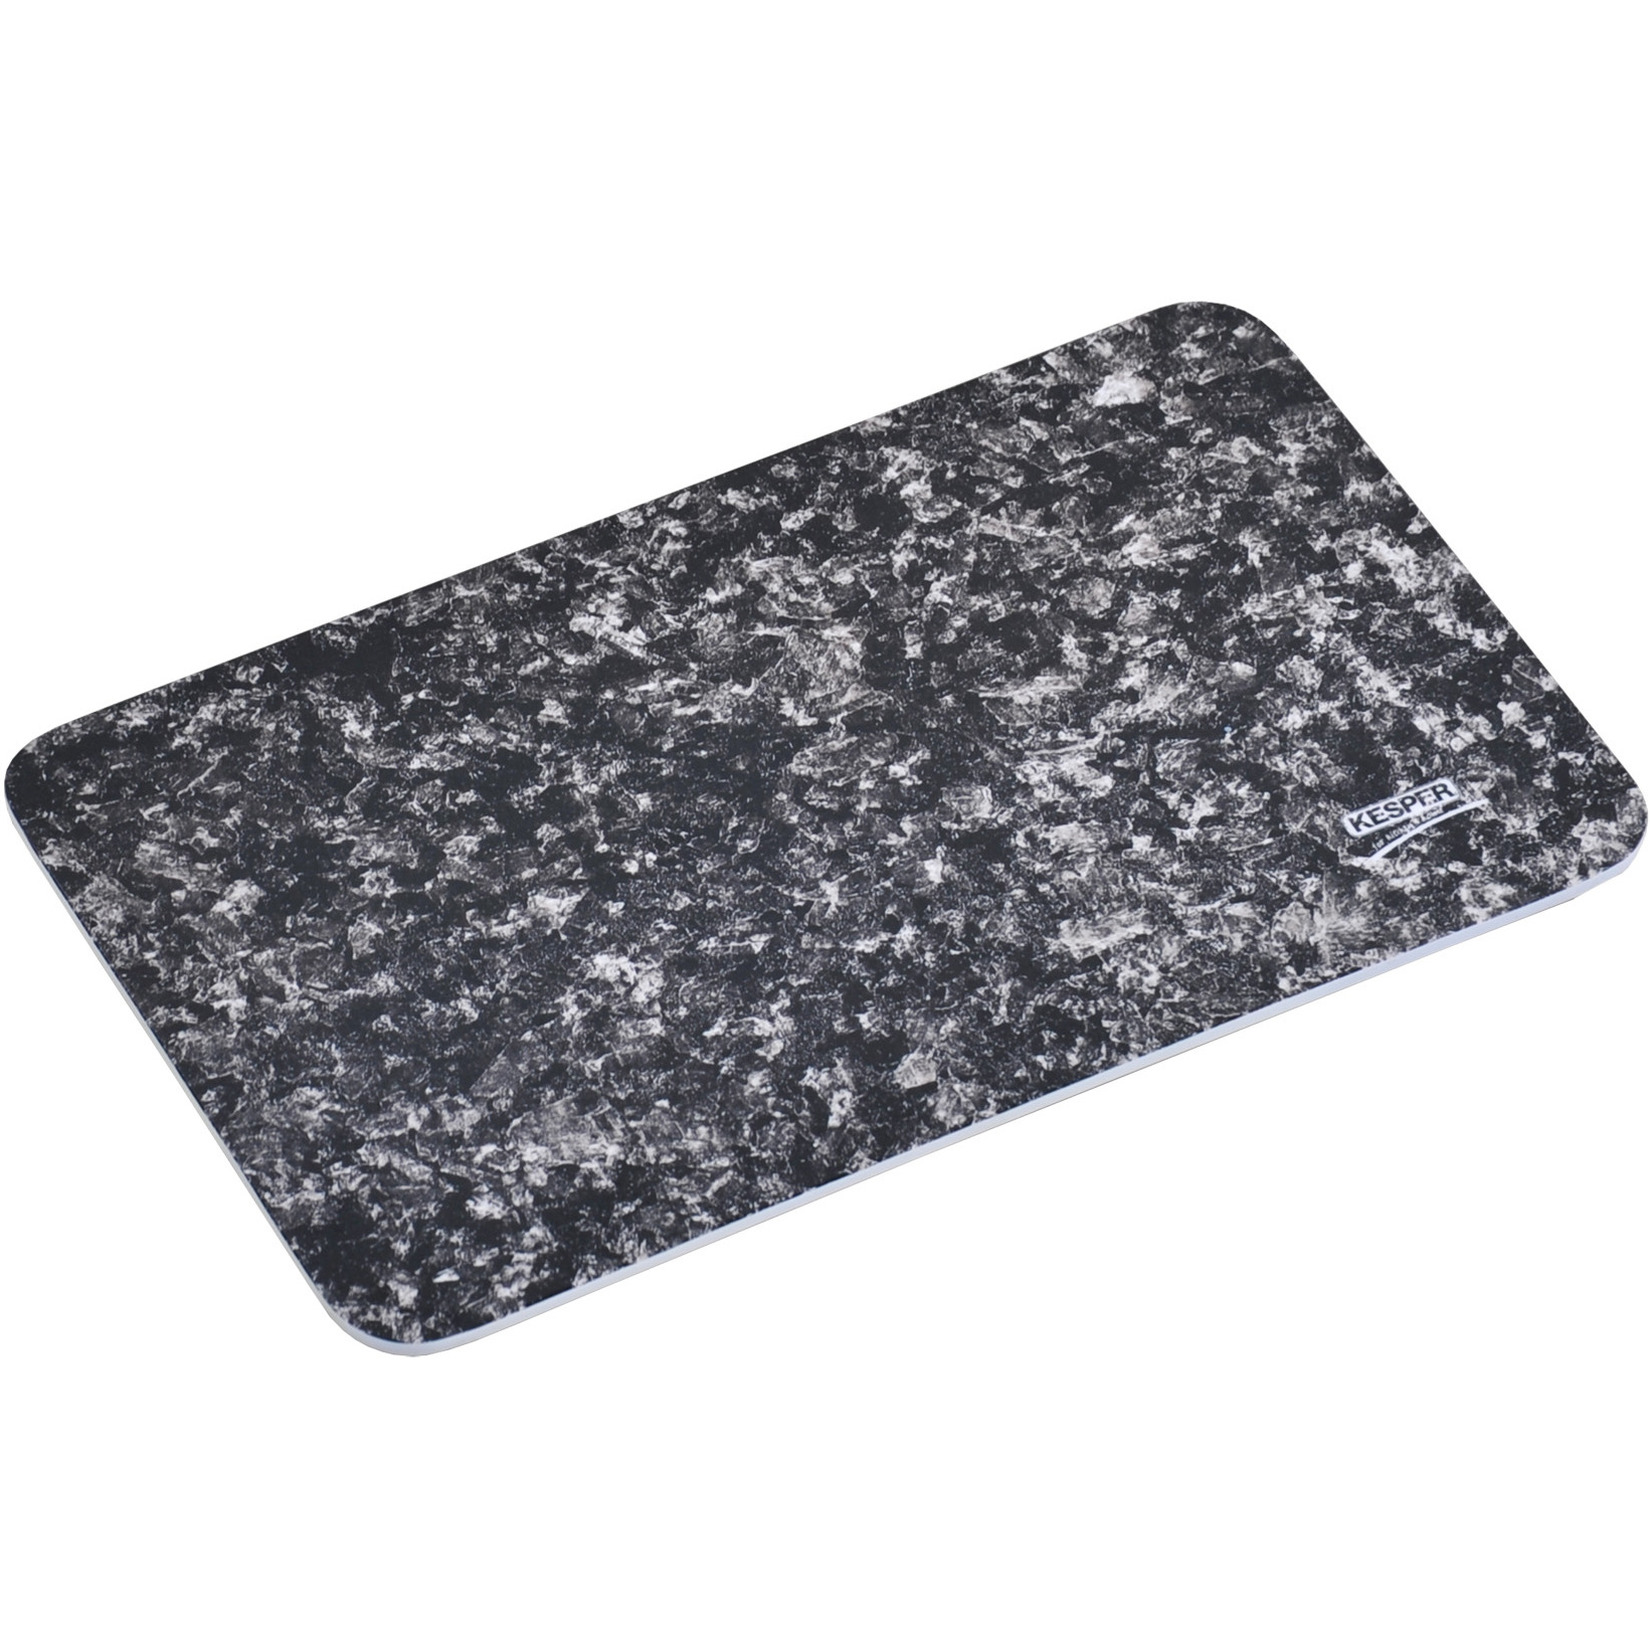 Melamine snijplank met antraciet grijze graniet print 19 x 30 cm